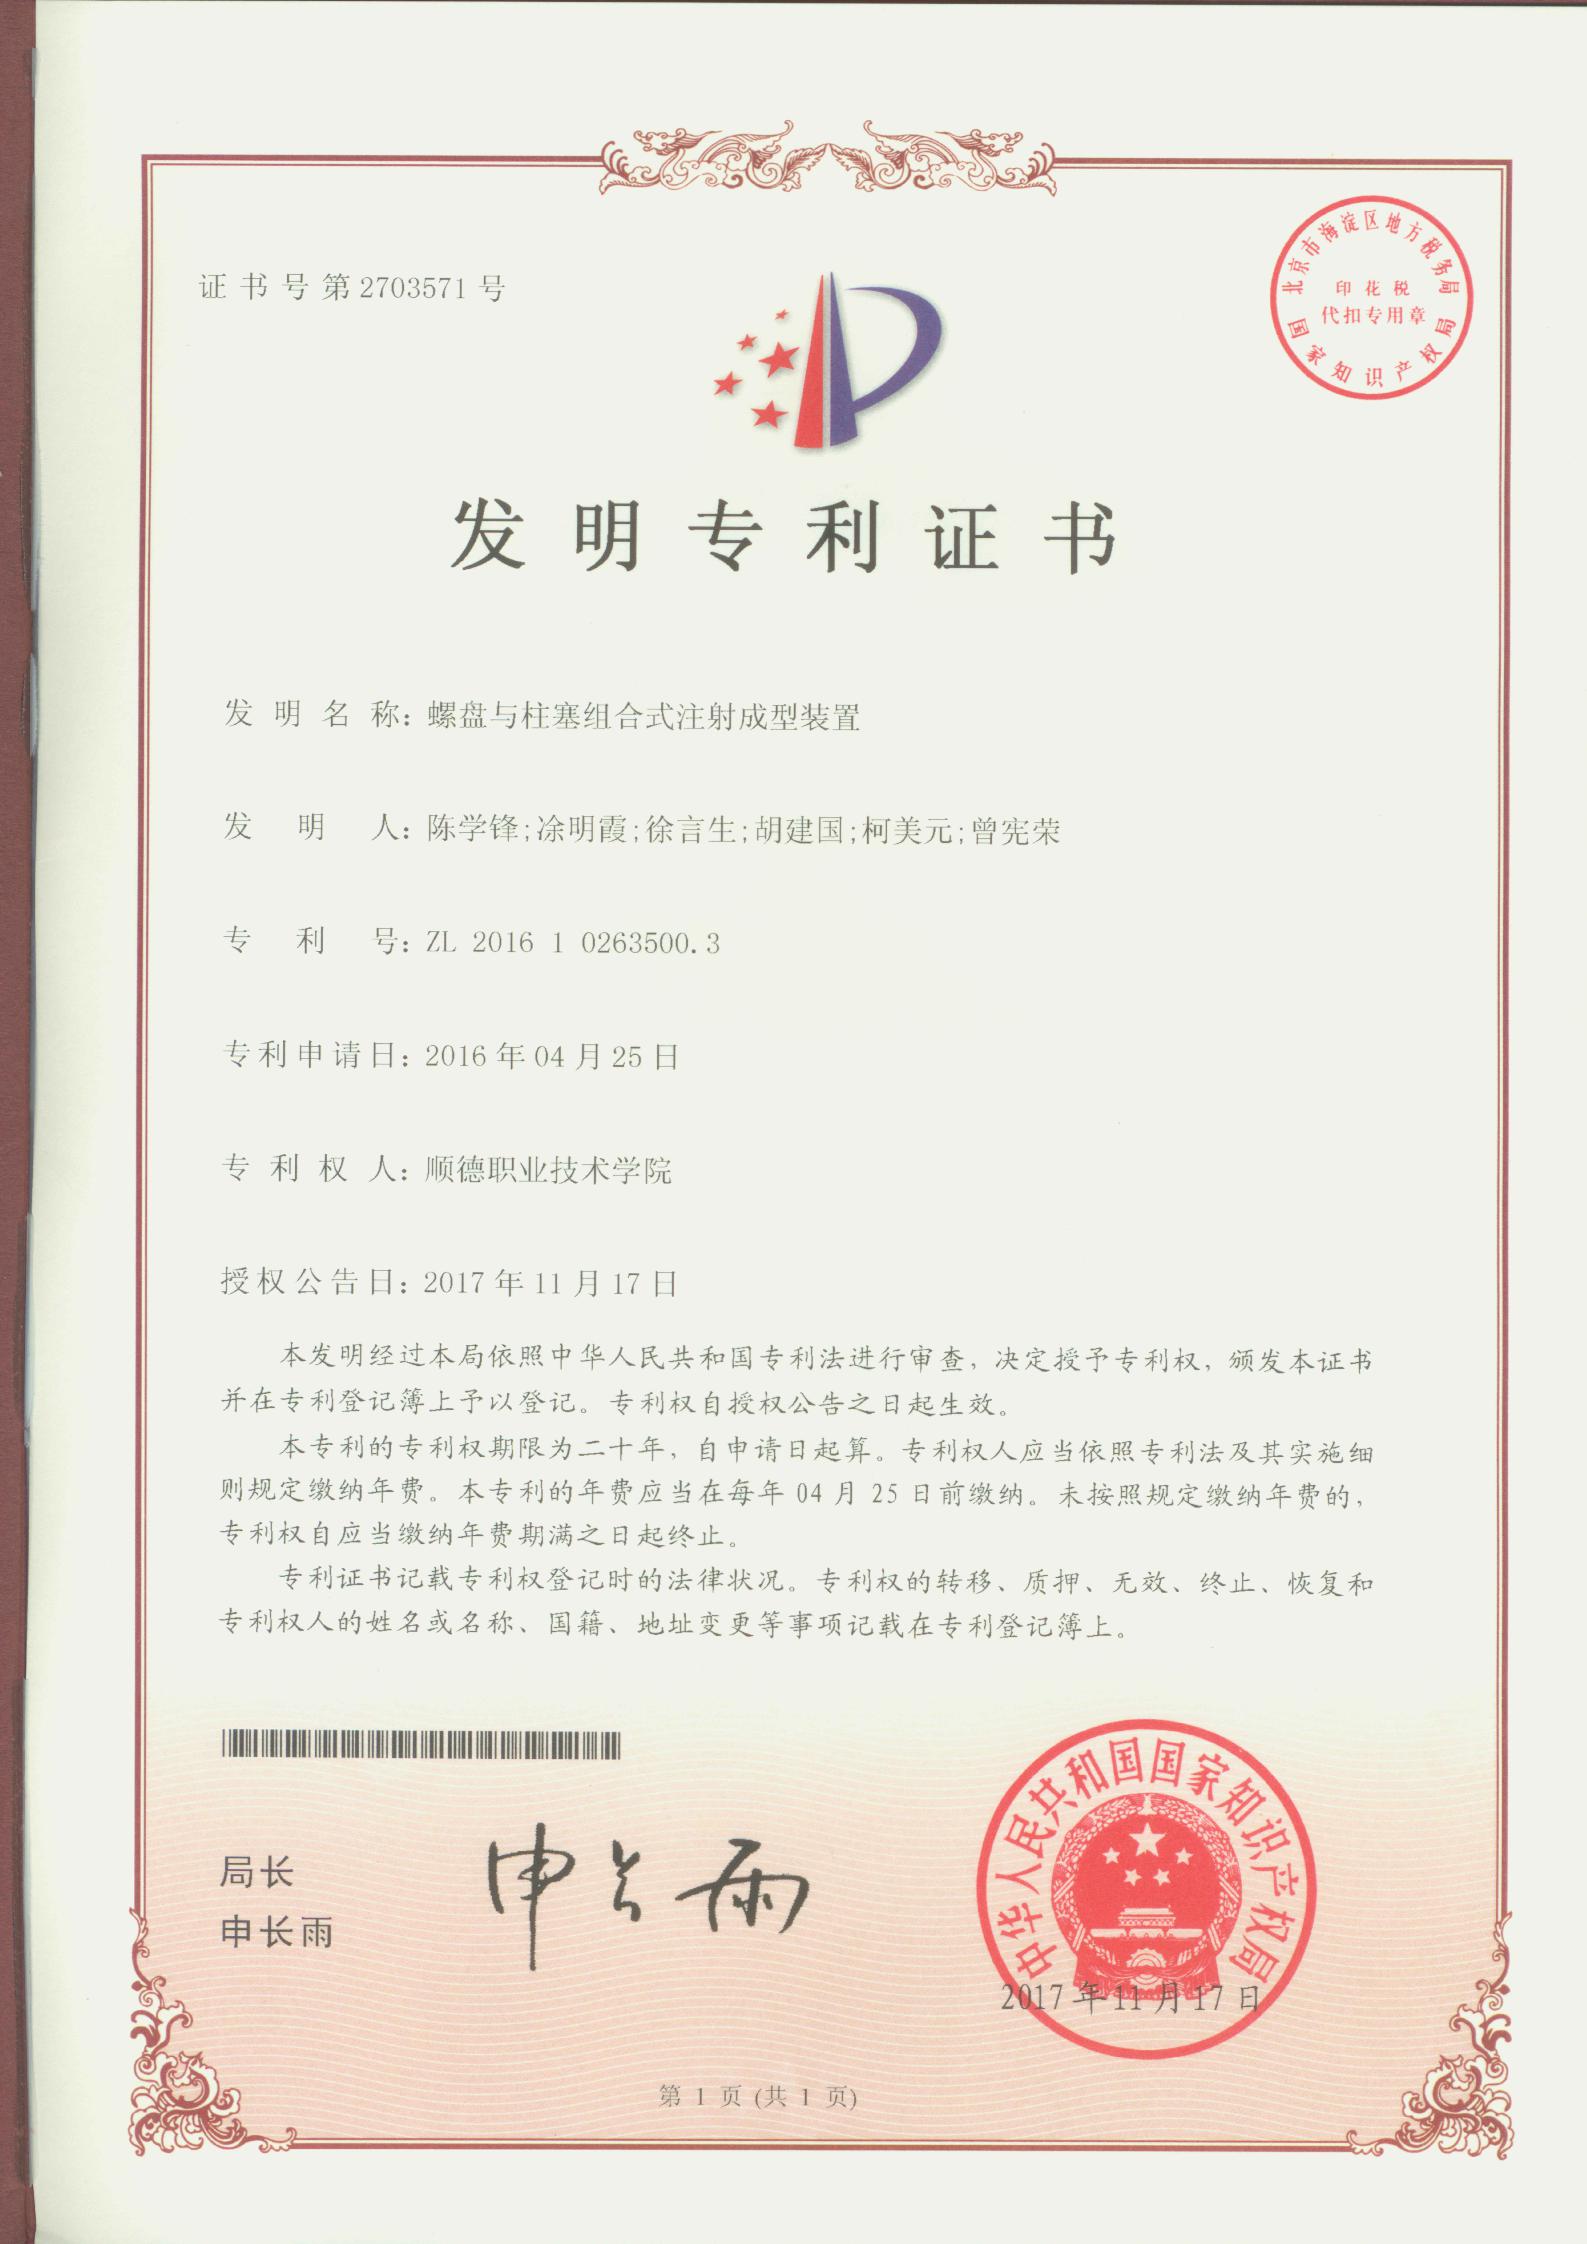 13.螺盘与柱塞组合式注射成型装置-中国发明专利证书_00.jpg